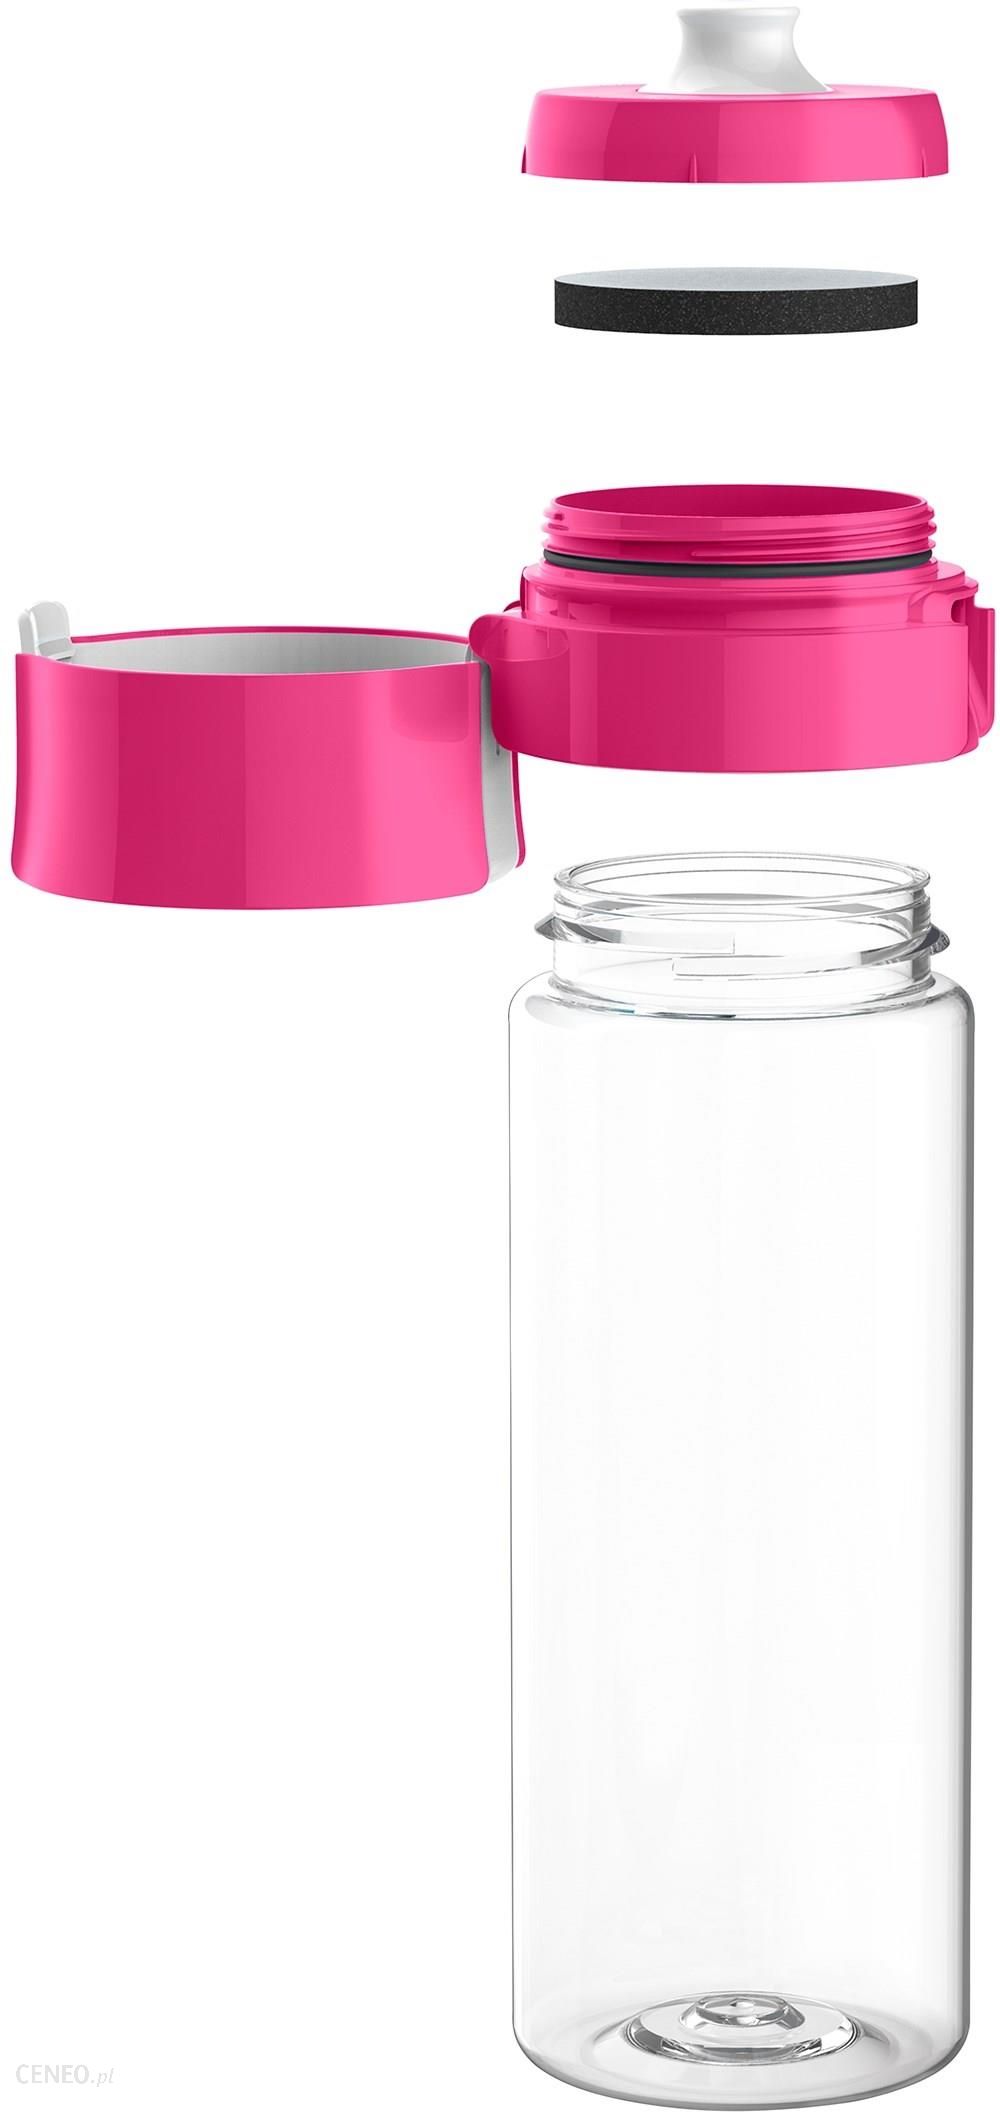 BRITA butelka z filtrem różowa + 4 Filtry